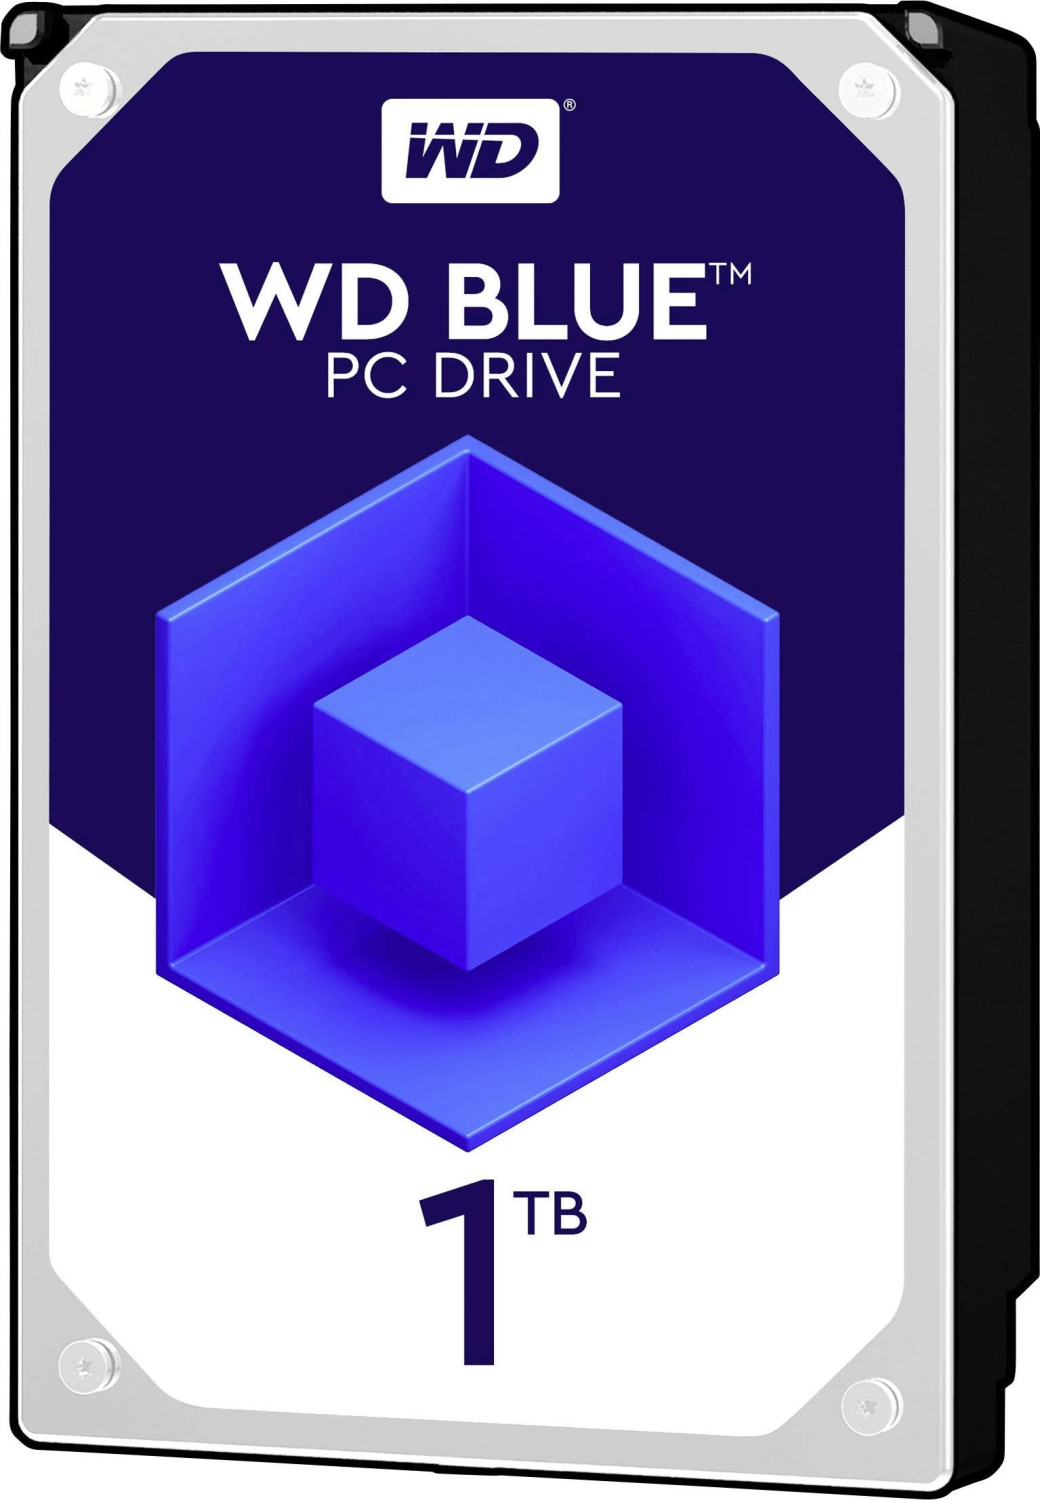 WD Blue 500 Go 2.5 Disque dur interne - Classe 5400 RPM, SATA 6 Gb/s,  Cache de 16 Mo